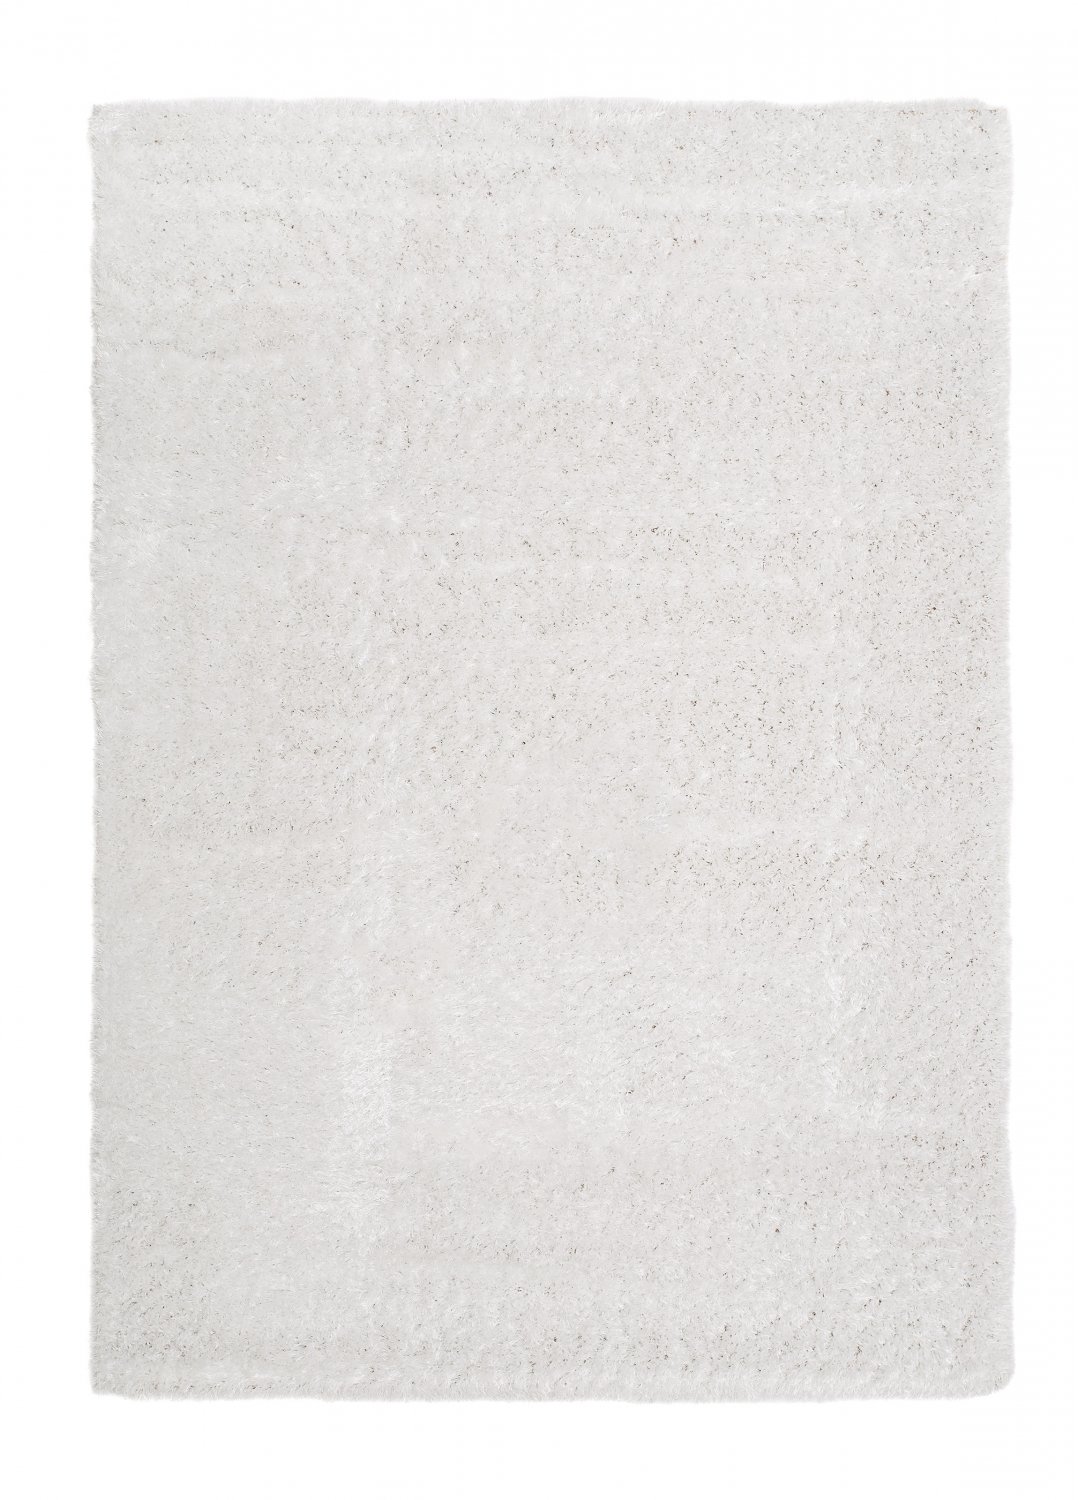 Safir hochflorteppich weiß shaggy teppich rund hochflor wohnzimmer 60x120 cm 80x 150 cm 140x200 cm 160x230 cm 200x300 cm